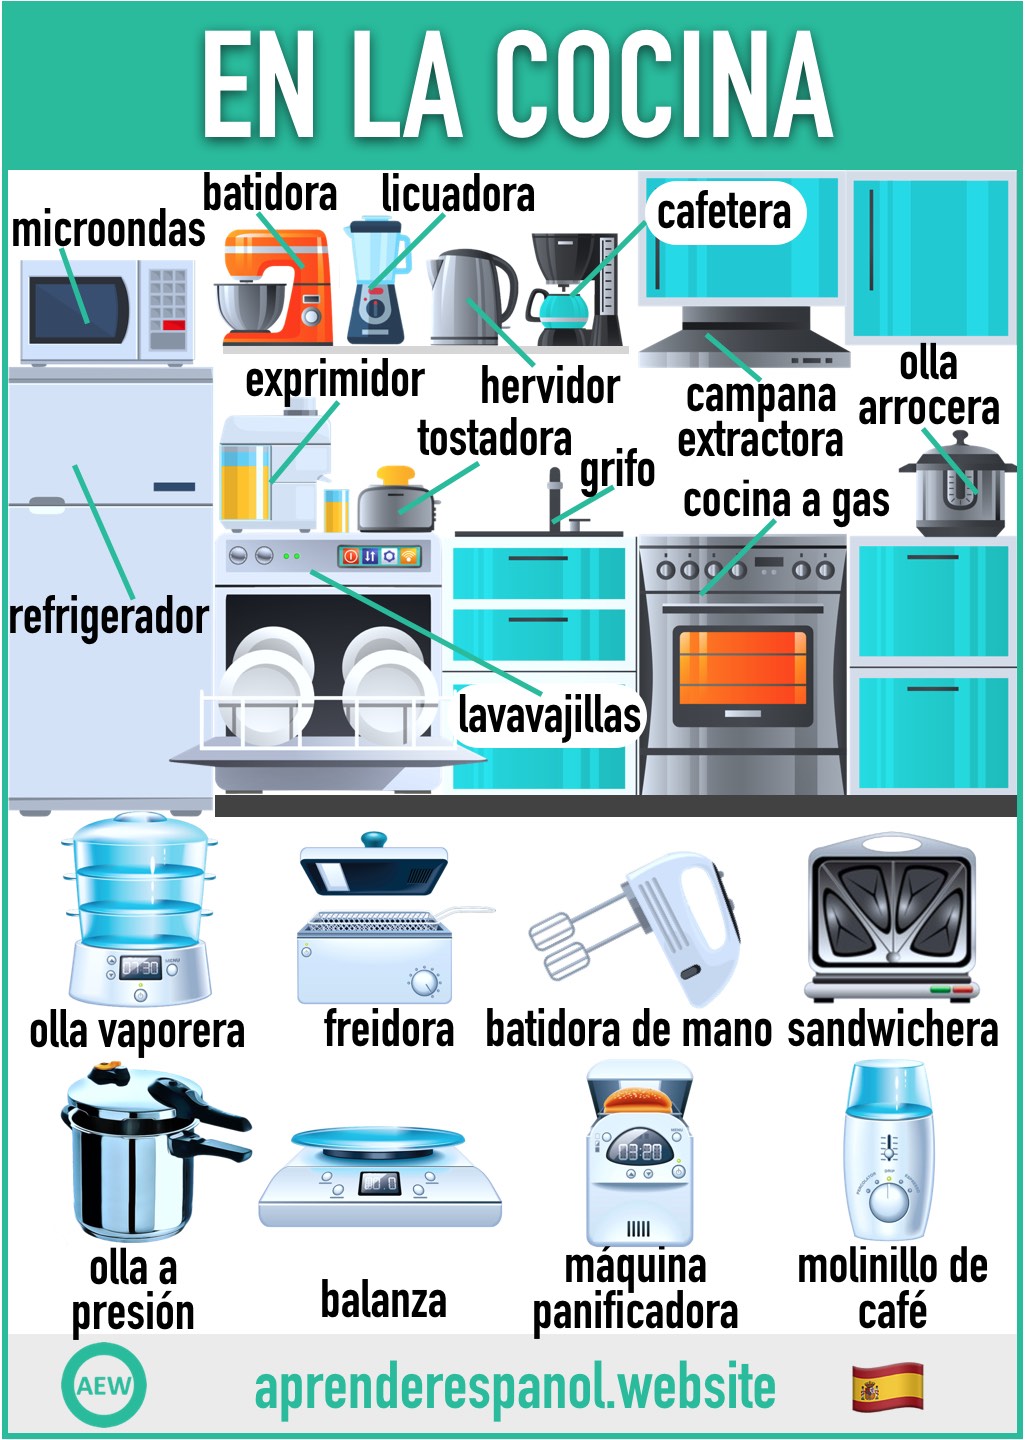 en la cocina en español - vocabulario de los electrodomésticos de la cocina en español - aprender español website - in the kitchen in Spanish - vocabulary of kitchen appliances in Spanish